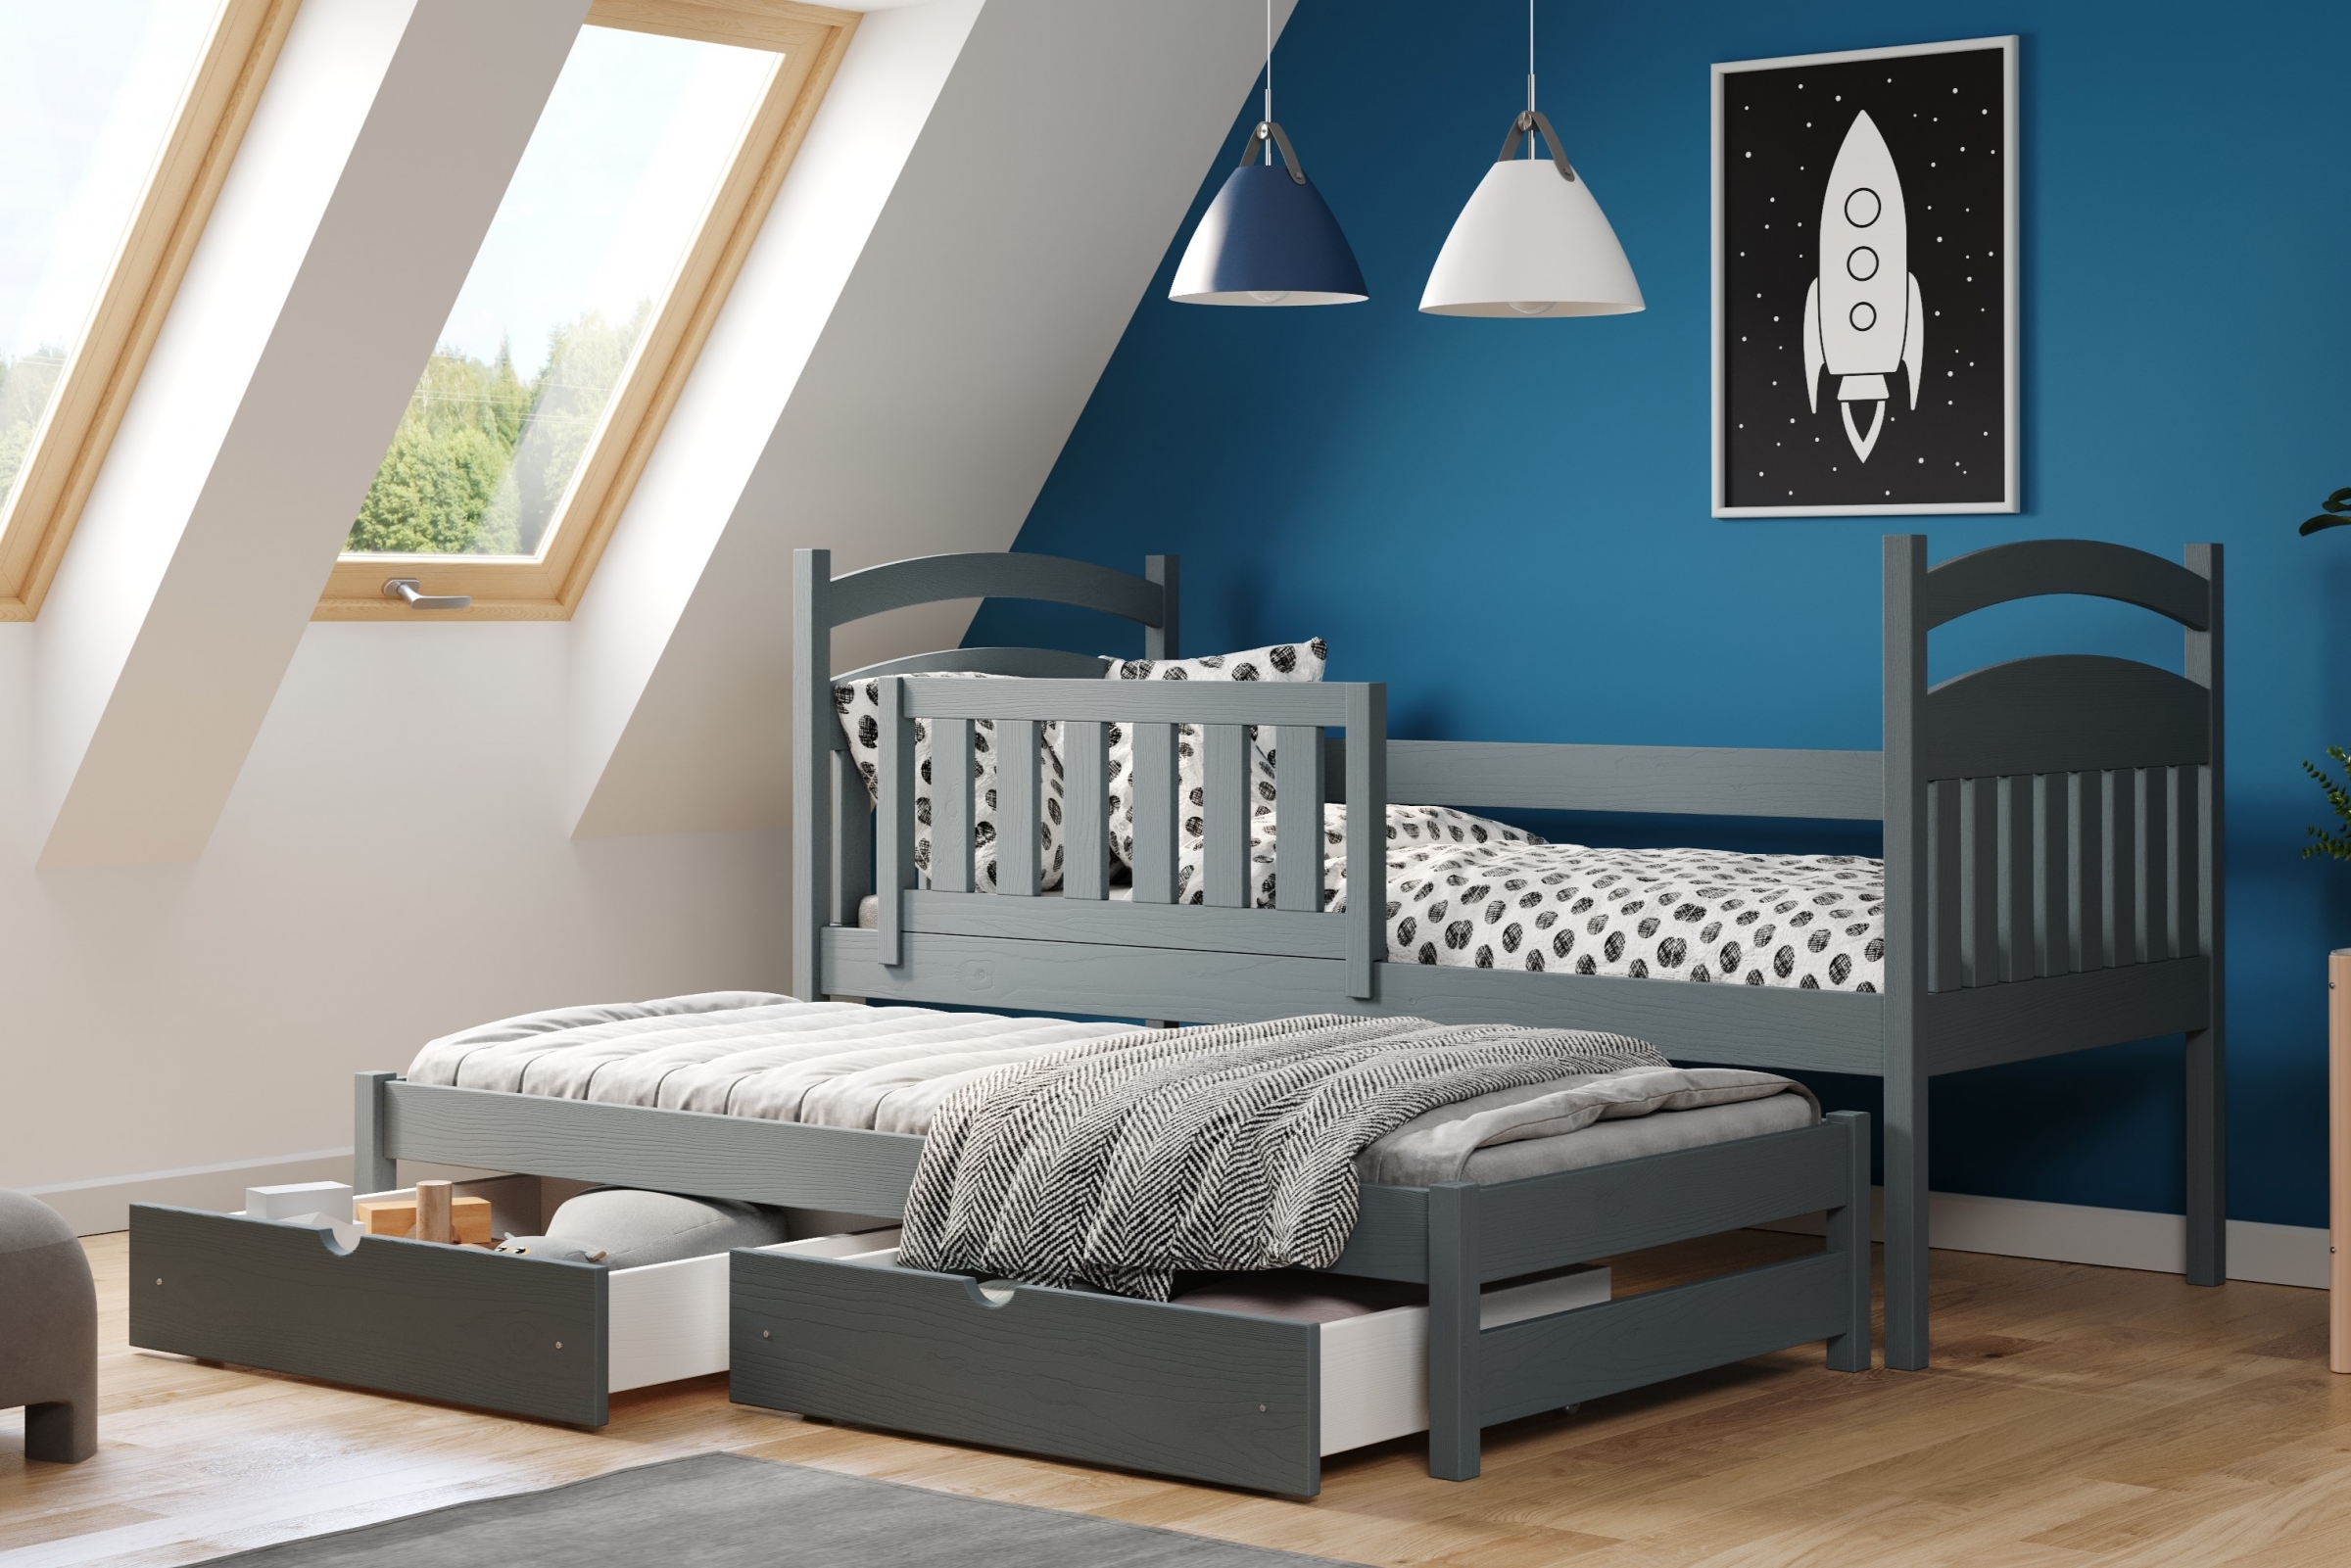 postel dětské přízemní výsuvná Amely - Barva grafit, rozměr 80x200 postel dzieciece přízemní výsuvná Amely - Barva grafit - aranzacja